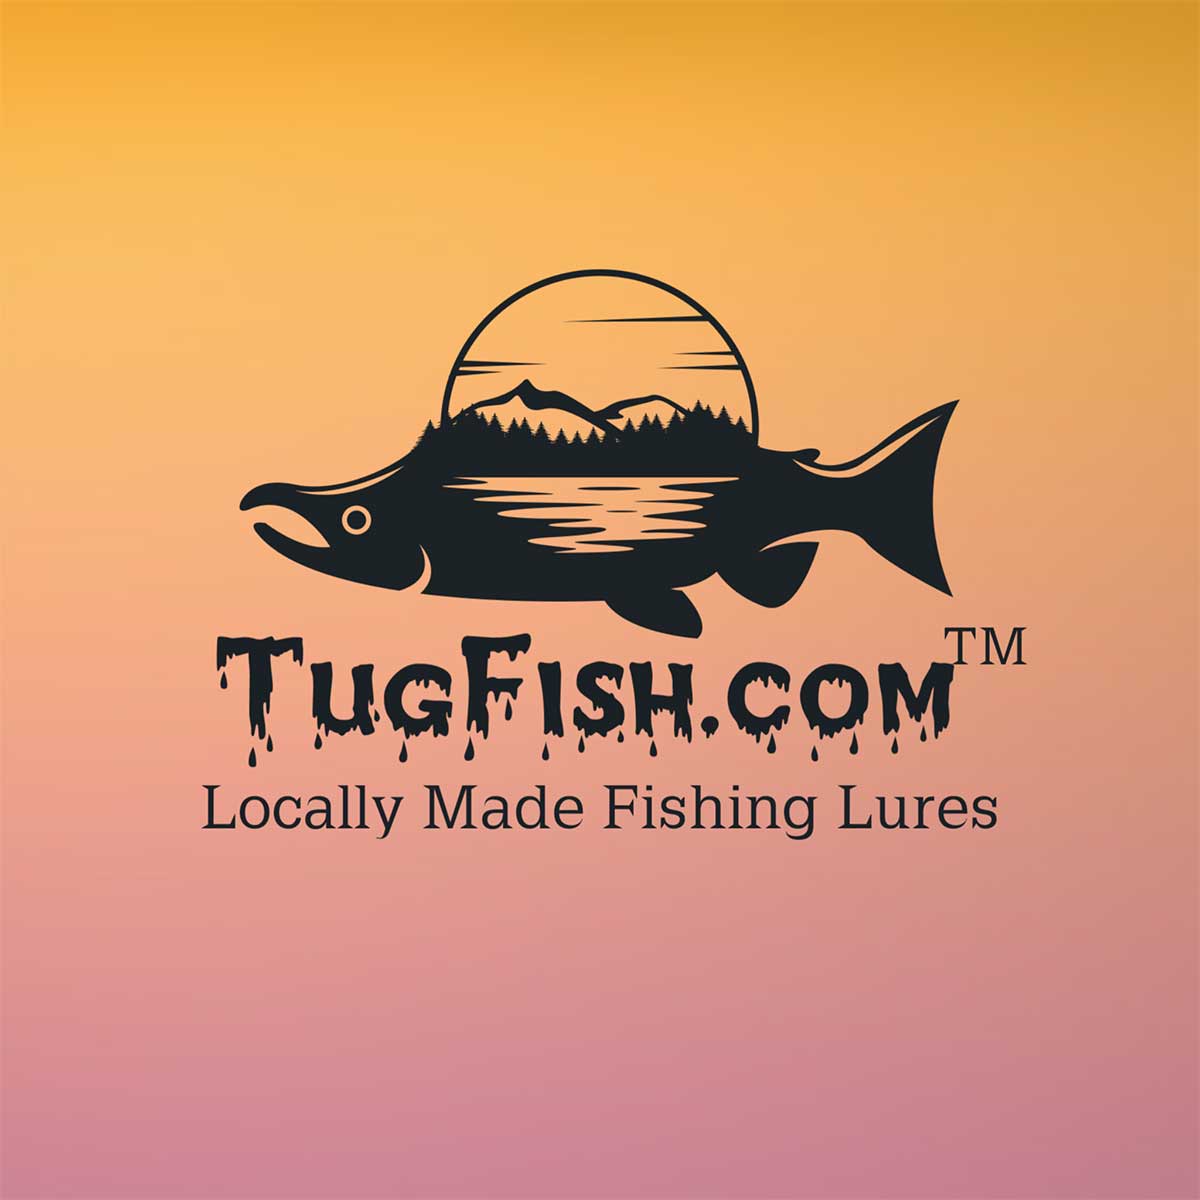 Swimbaits defined - Tugfish